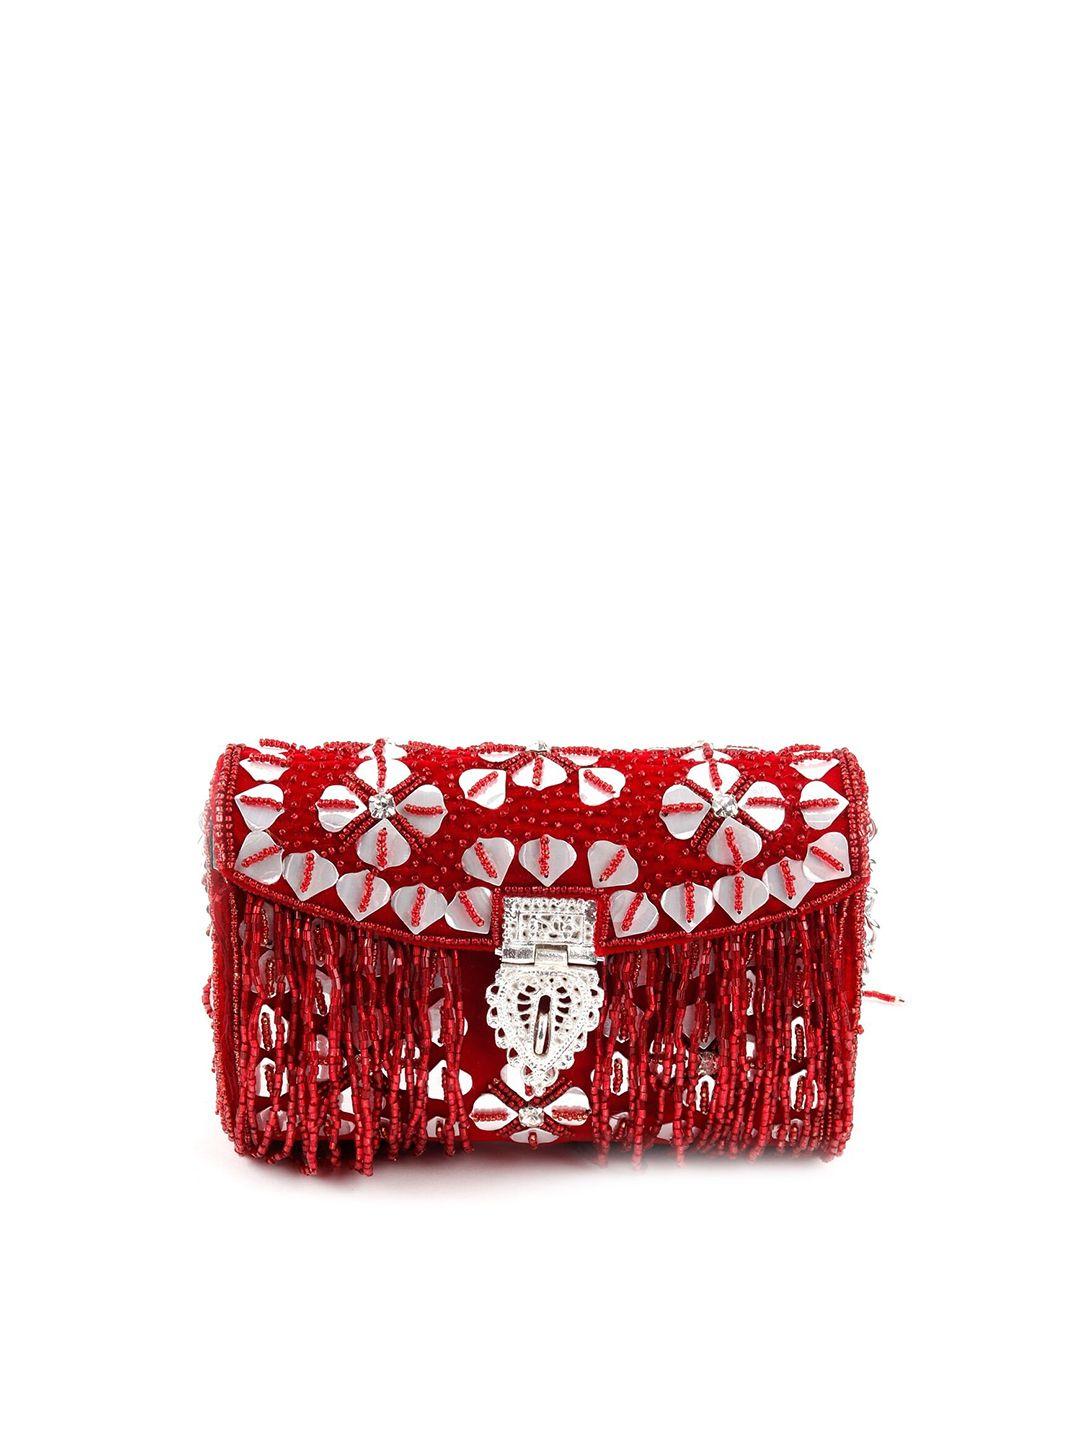 odette red embellished purse clutch